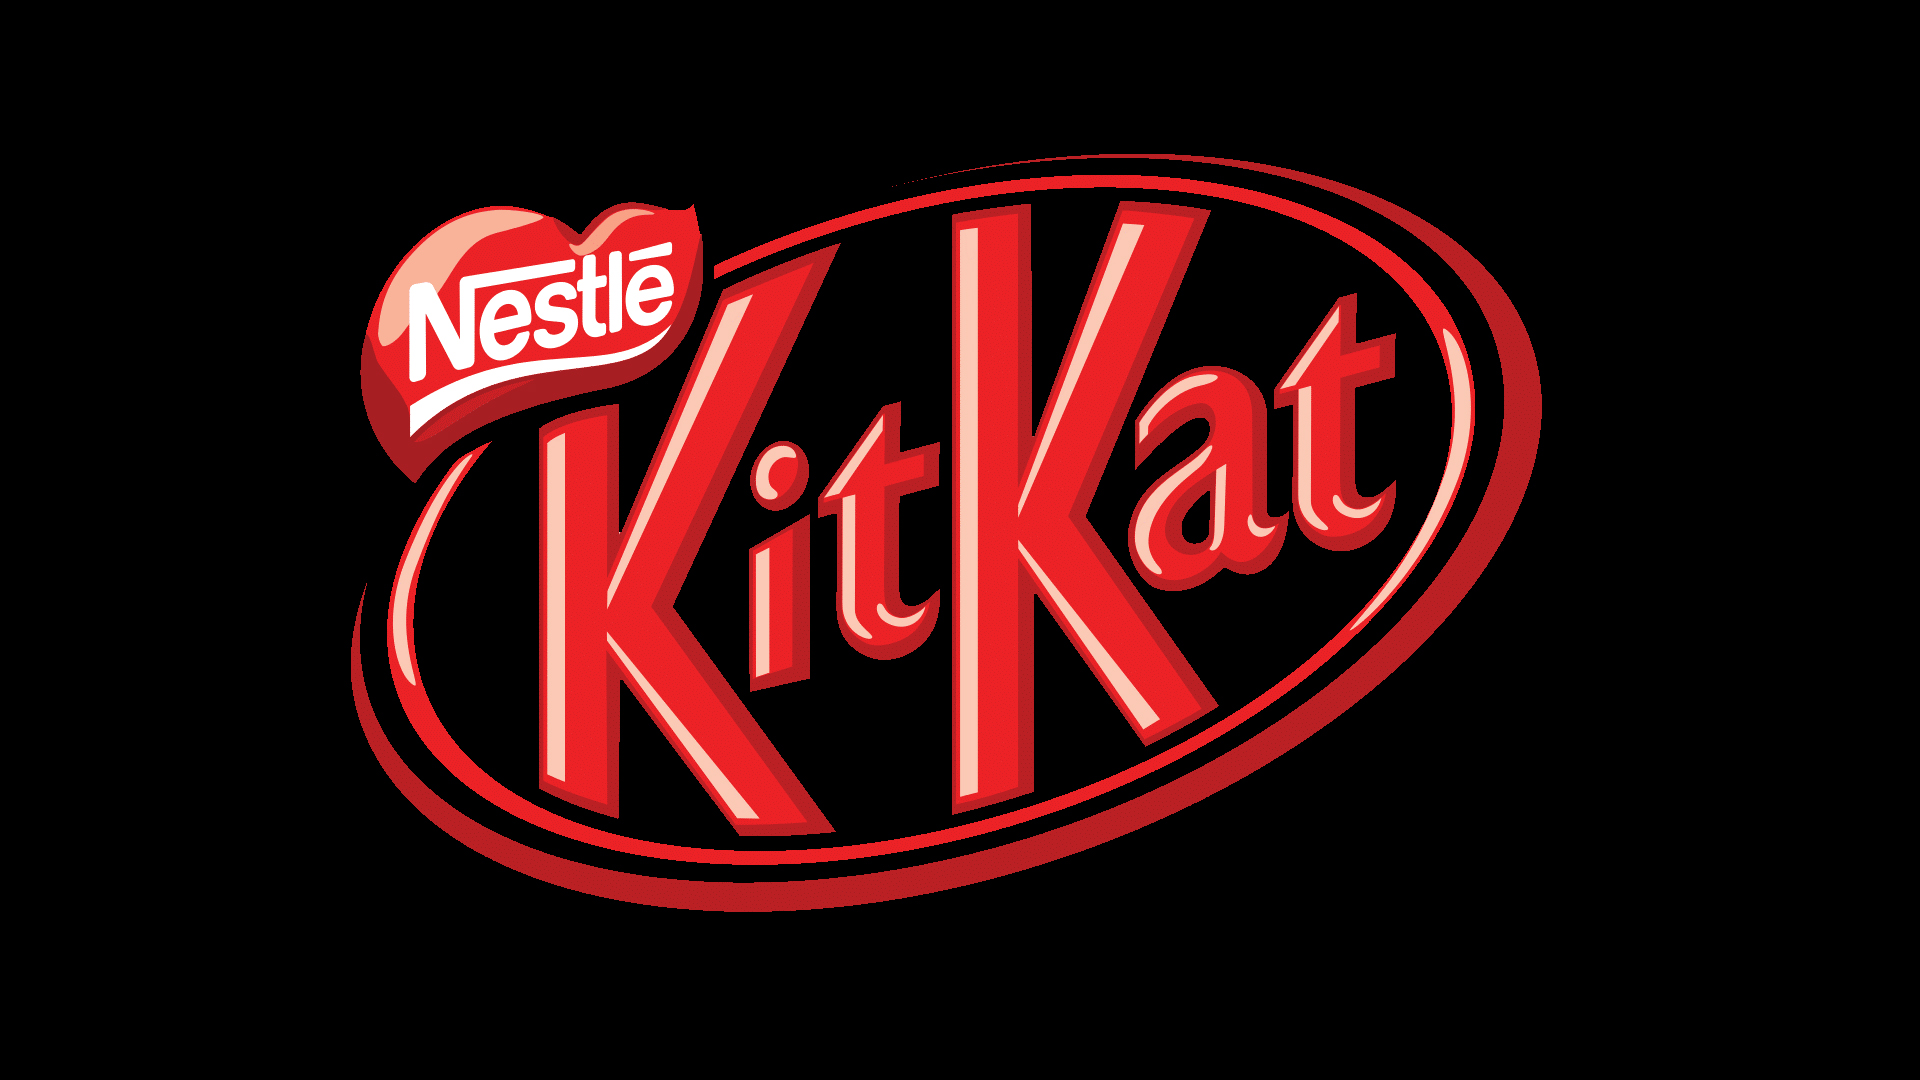 Meaning Kit Kat logo and symbol.